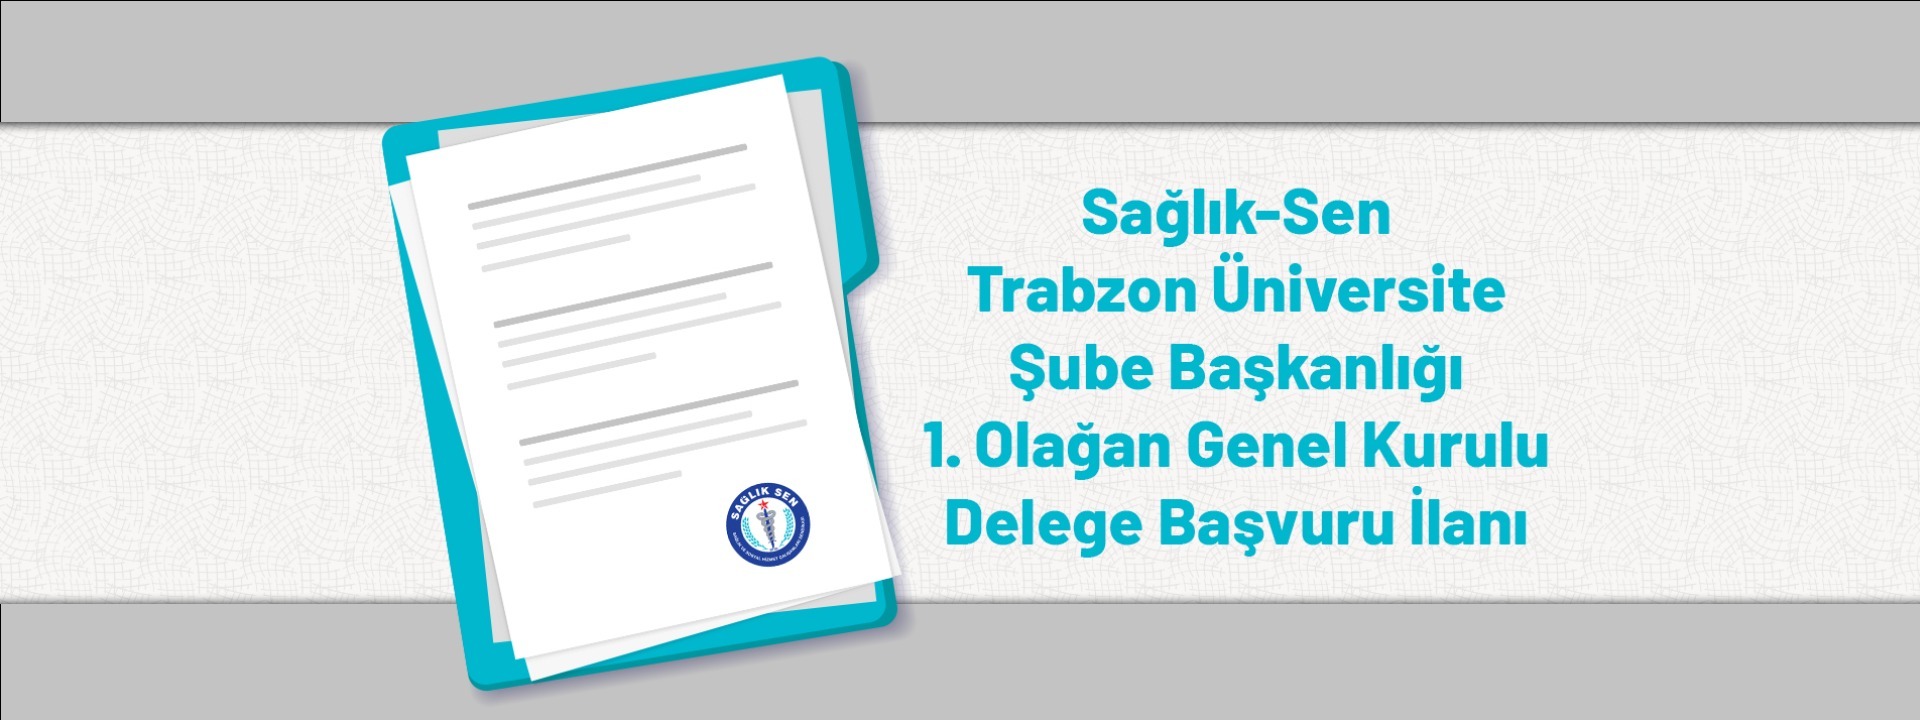 Sağlık-Sen Trabzon Üniversite Şube Başkanlığı 1. Olağan Genel Kurulu Delege Başvuru İlanı